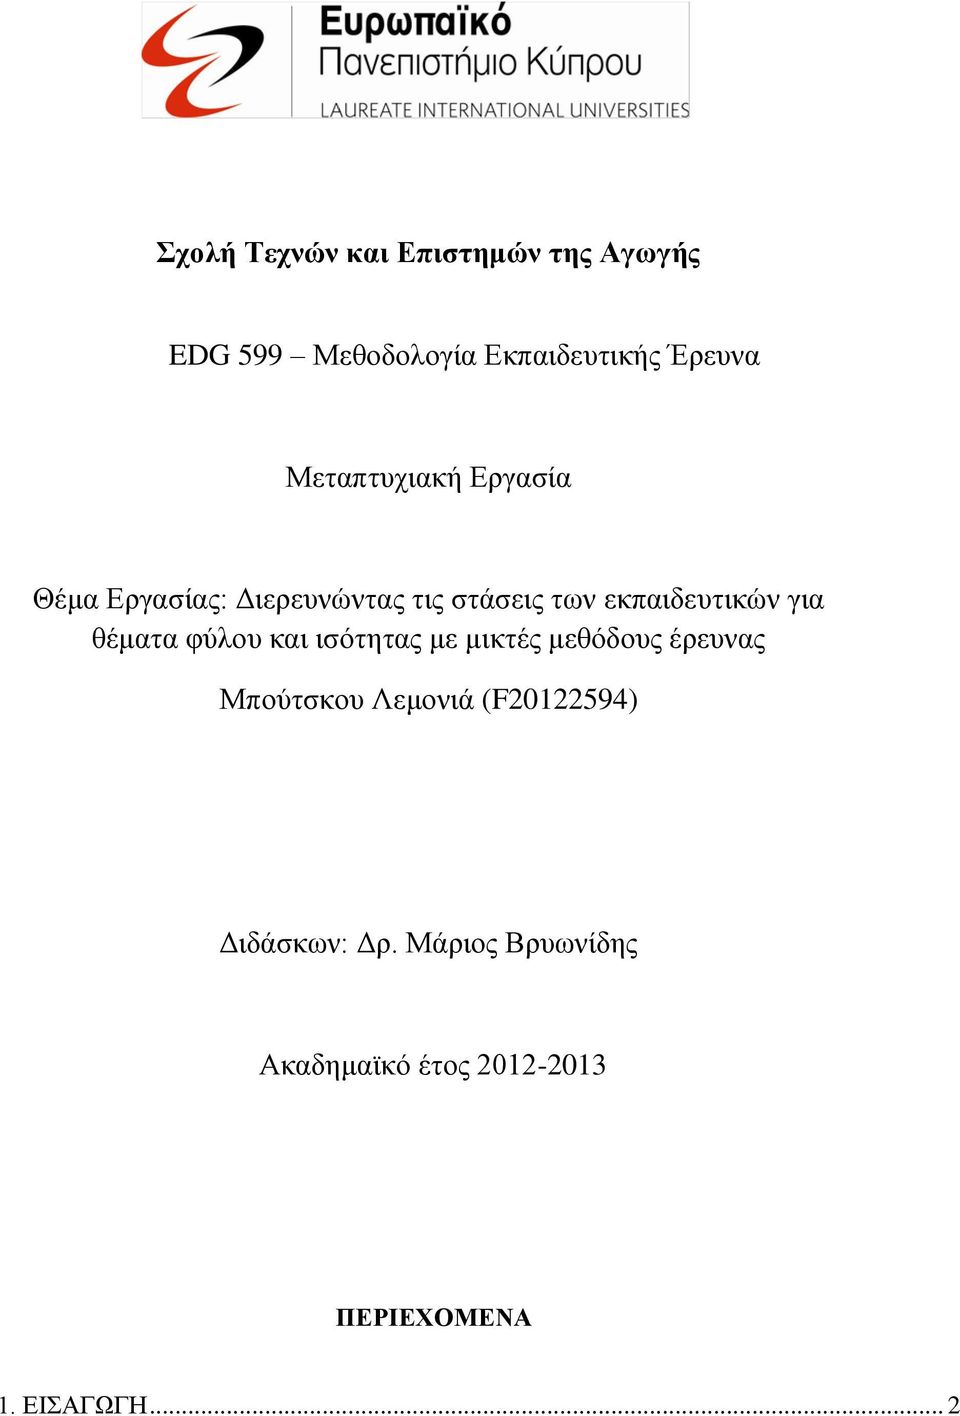 θέματα φύλου και ισότητας με μικτές μεθόδους έρευνας Μπούτσκου Λεμονιά (F20122594)